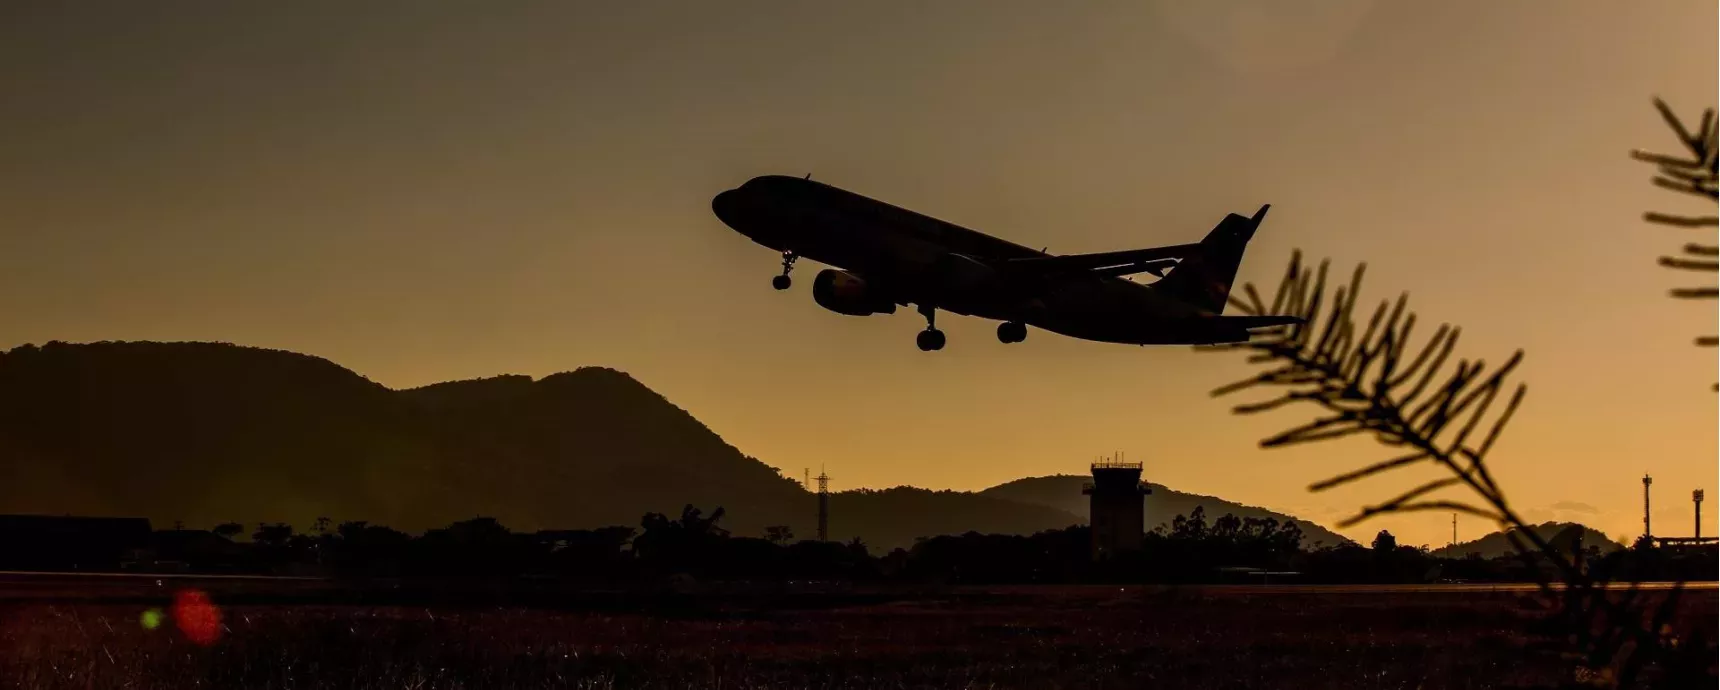 Der Flughafen Natal garantiert seinen Passagieren kostenloses, unbegrenztes Internet